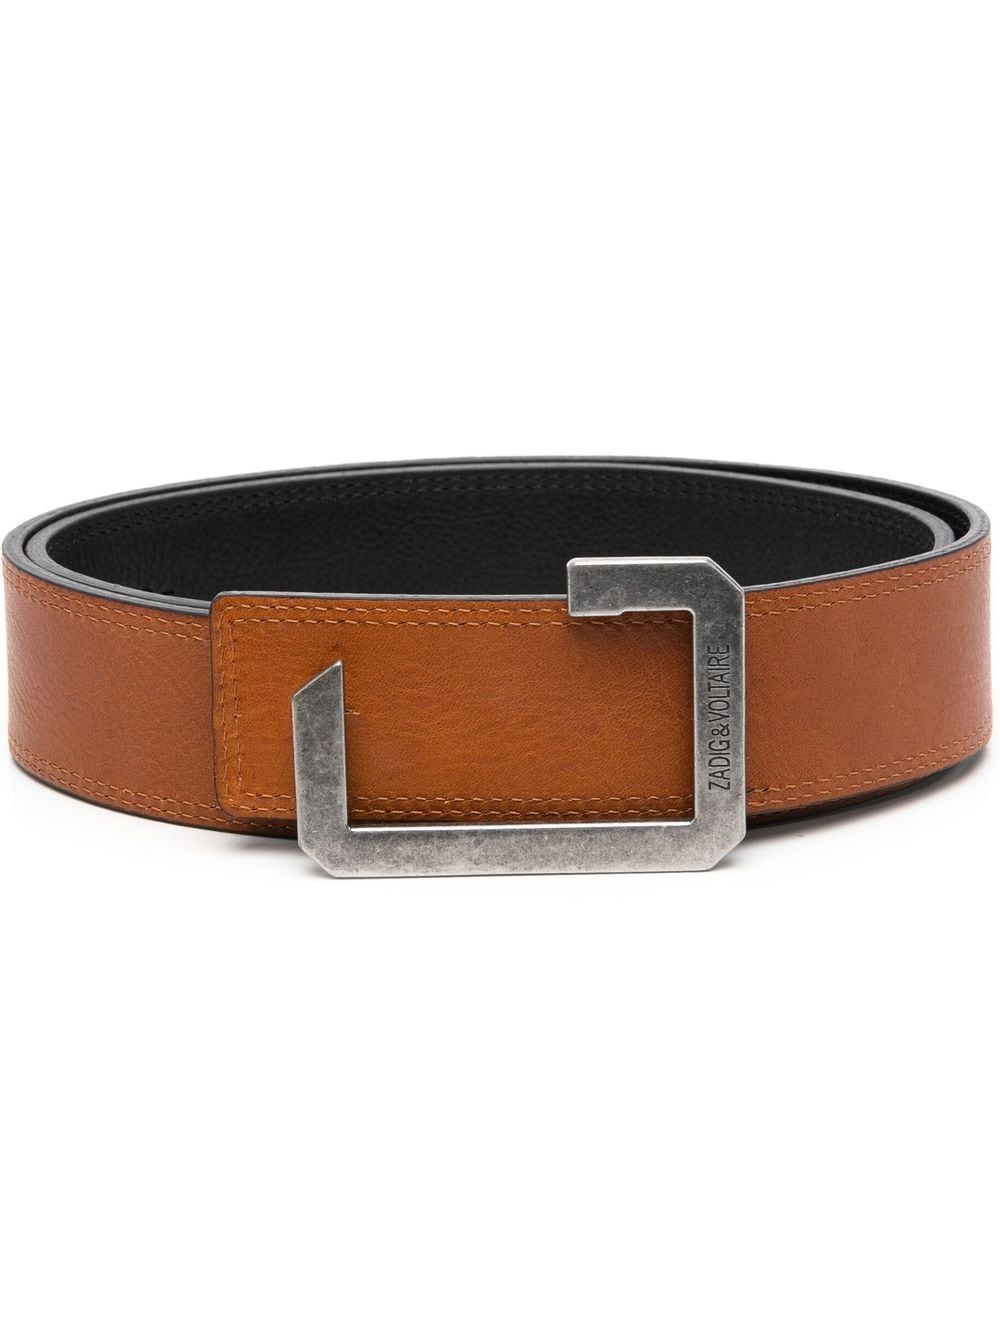 Zadig&Voltaire La Reversible leather belt